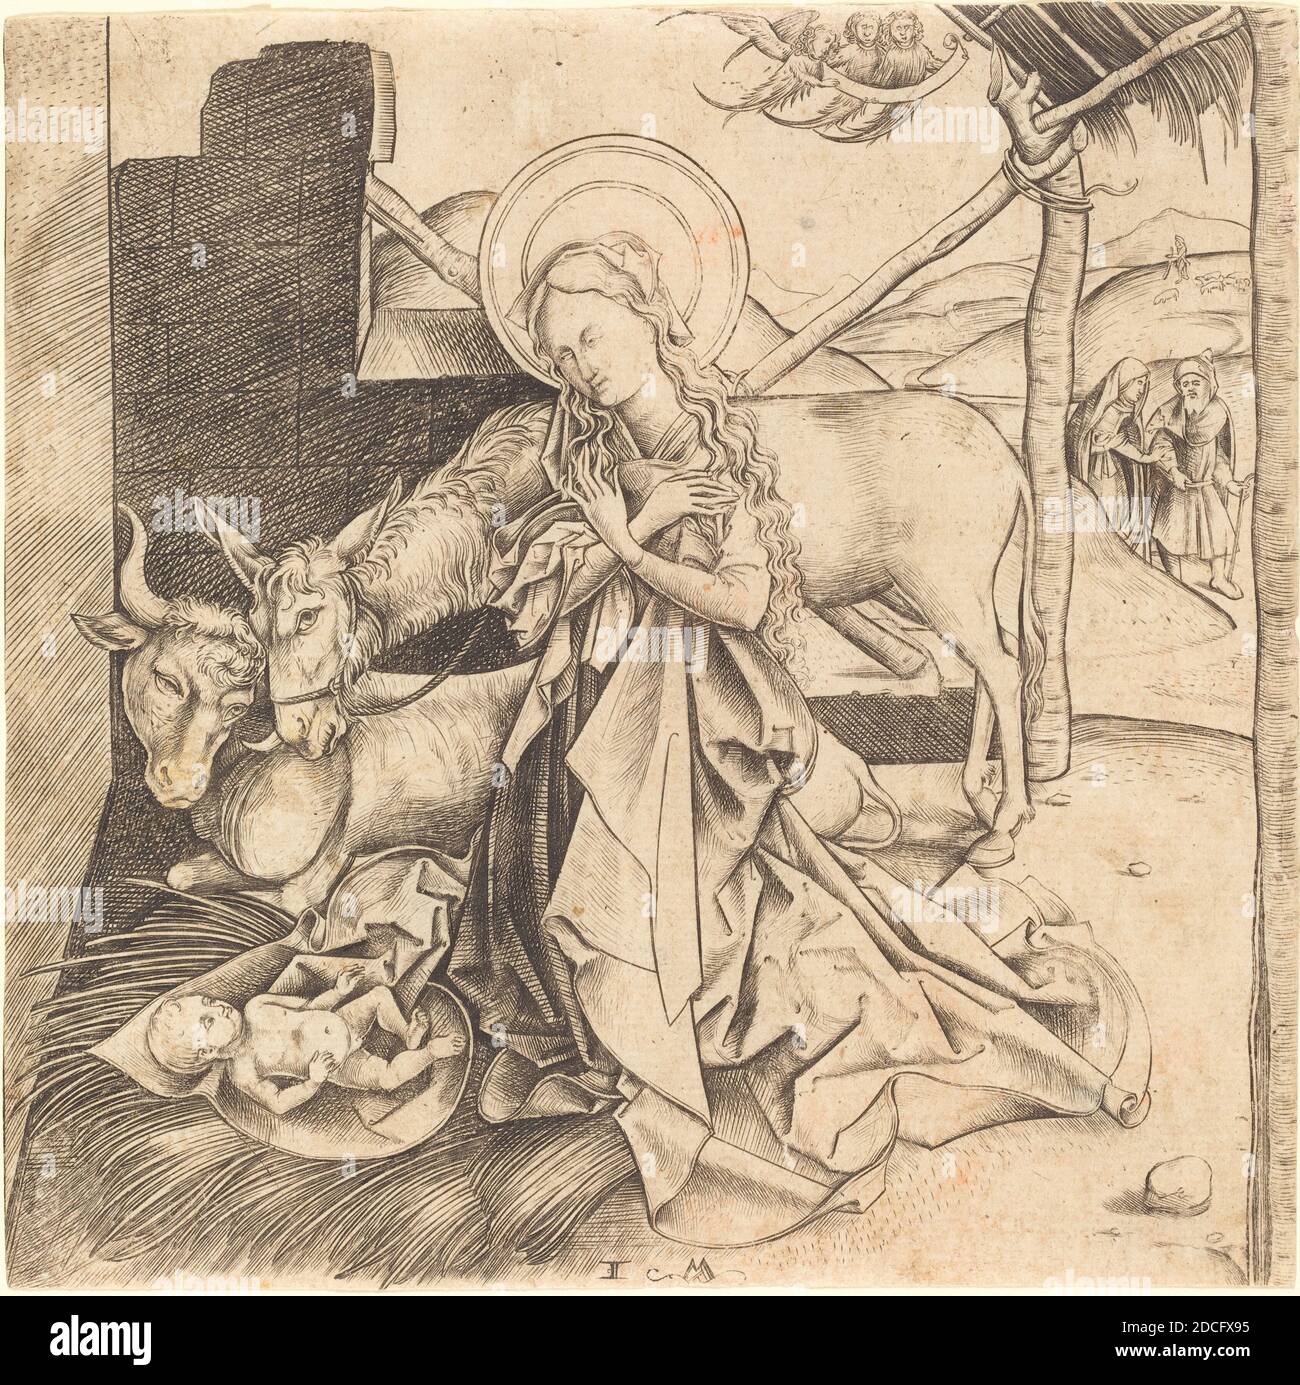 Israhel van Meckenem, (artist), German, c. 1445 - 1503, The Nativity, engraving Stock Photo